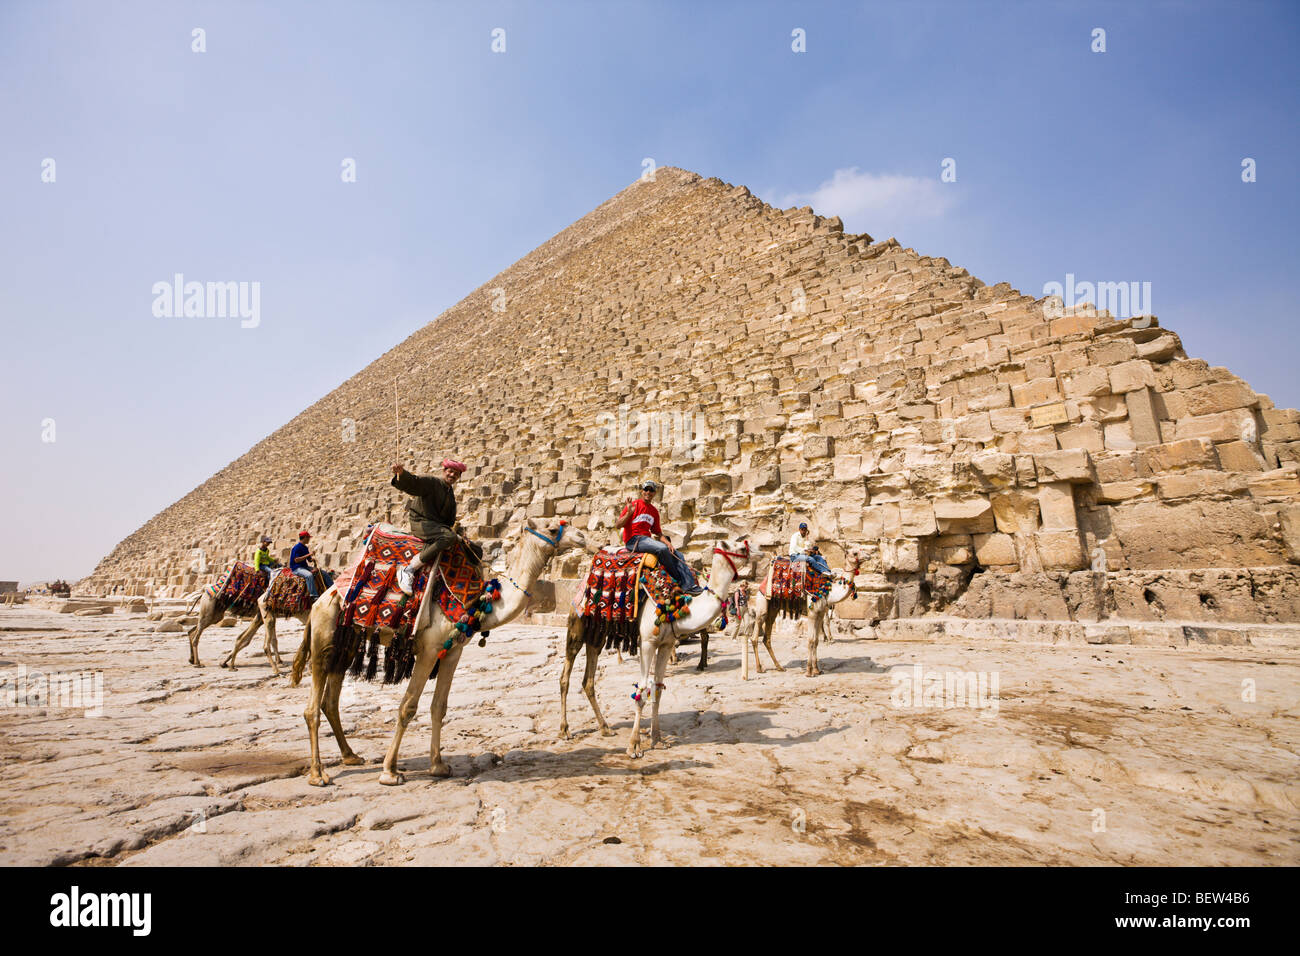 Chamelier en face de pyramide de Khéops, Le Caire, Egypte Banque D'Images